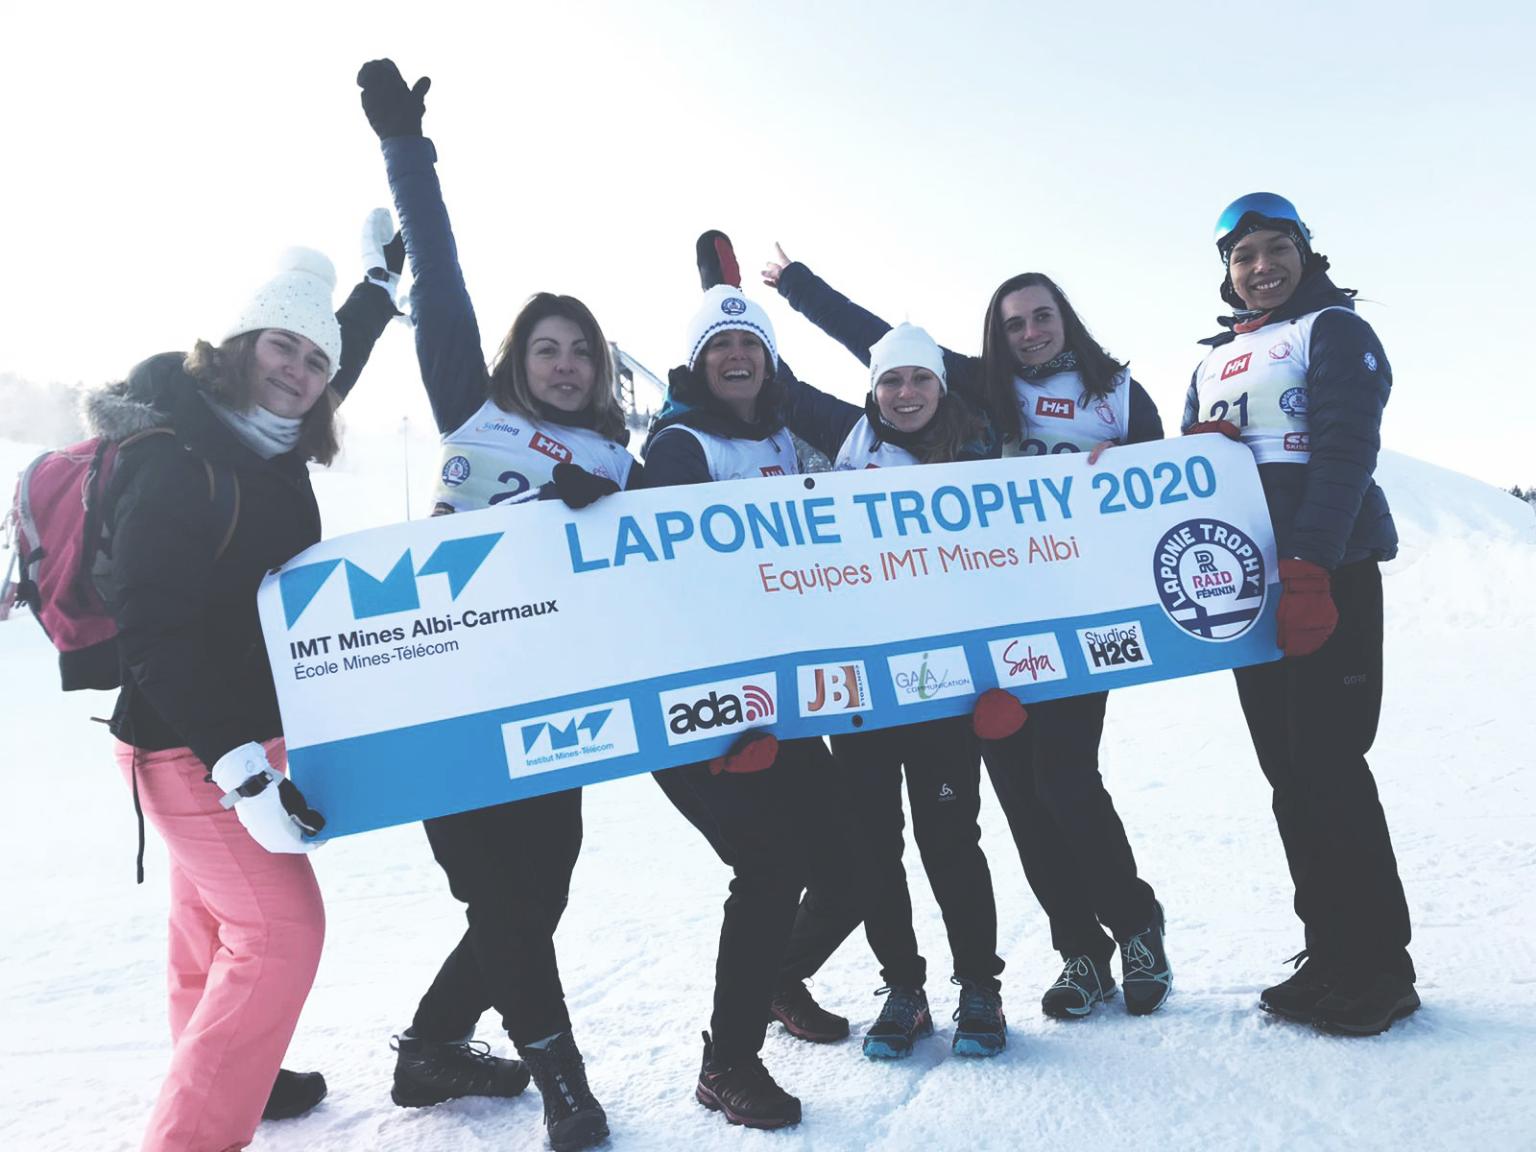 EVENT : Lapony Trophy 2020